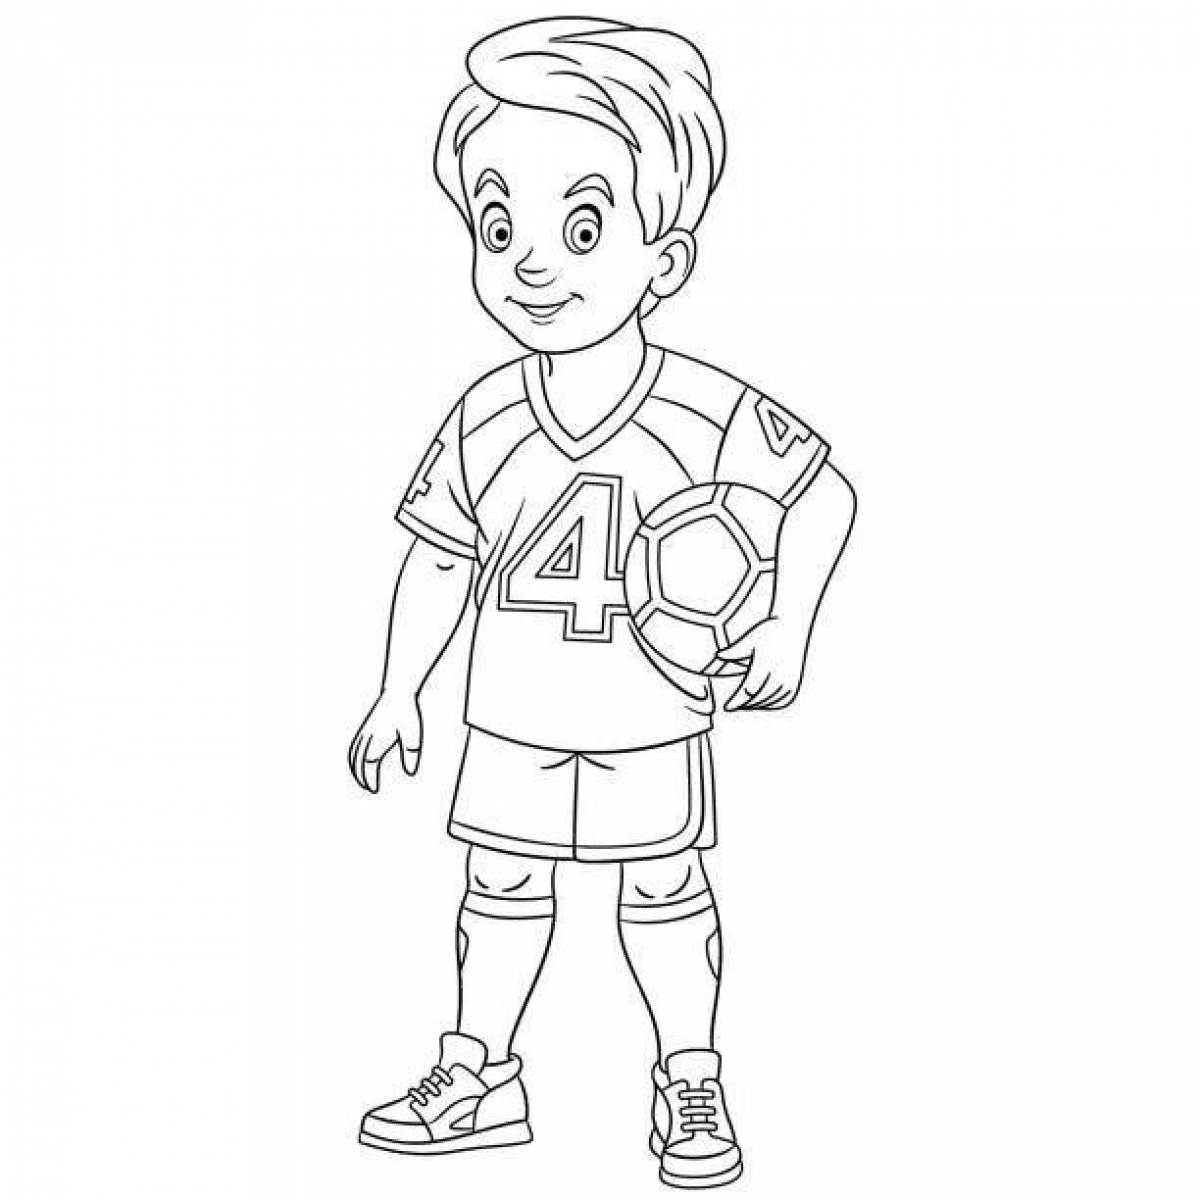 Раскраска решительный мальчик-футболист